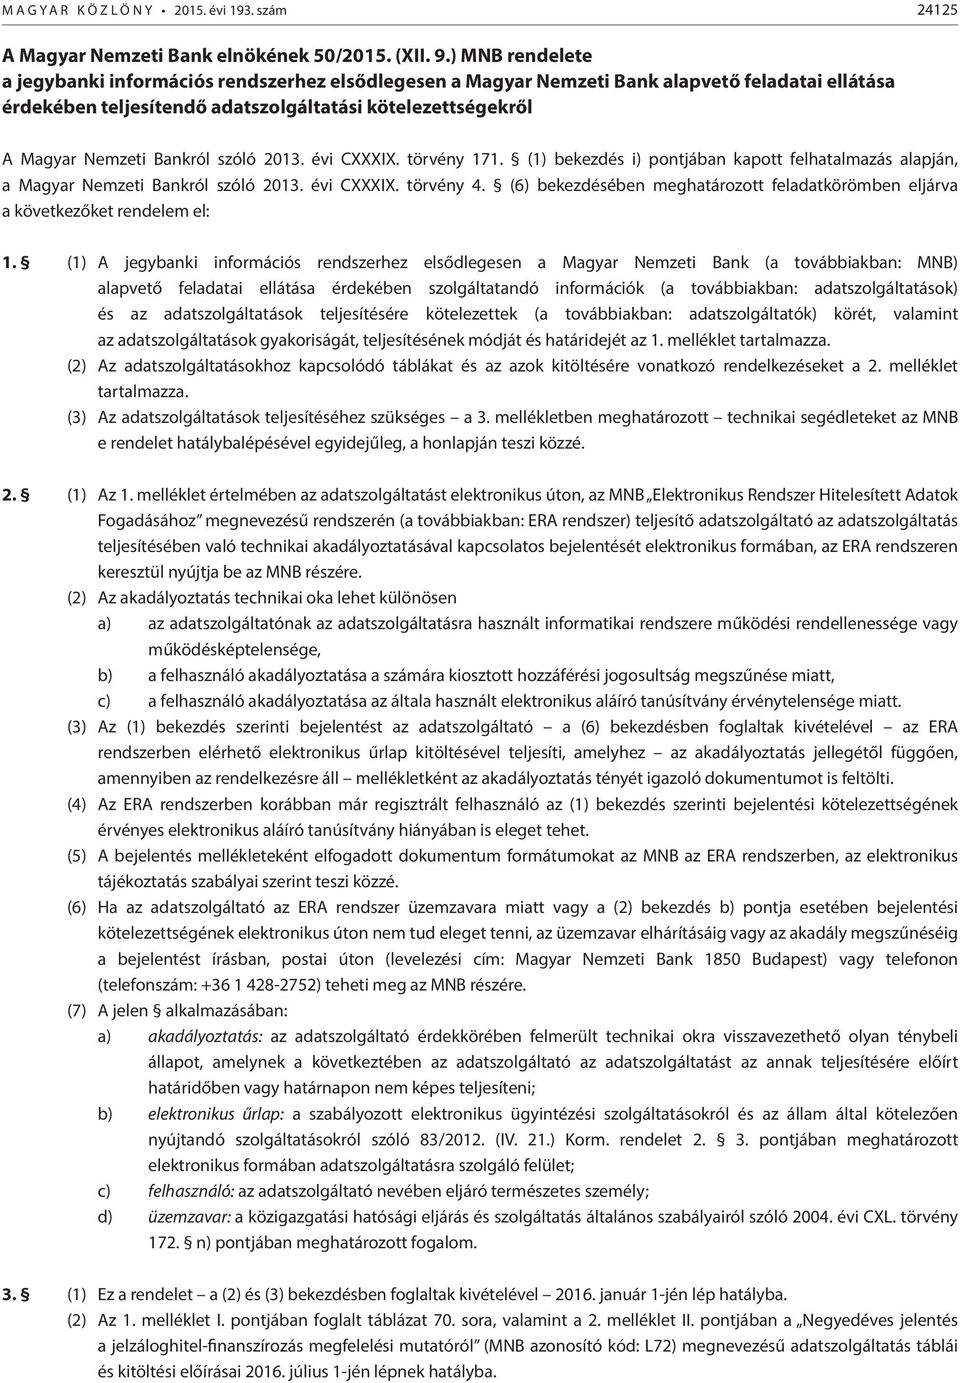 szóló 2013. évi CXXXIX. törvény 171. (1) bekezdés i) pontjában kapott felhatalmazás alapján, a Magyar Nemzeti Bankról szóló 2013. évi CXXXIX. törvény 4.